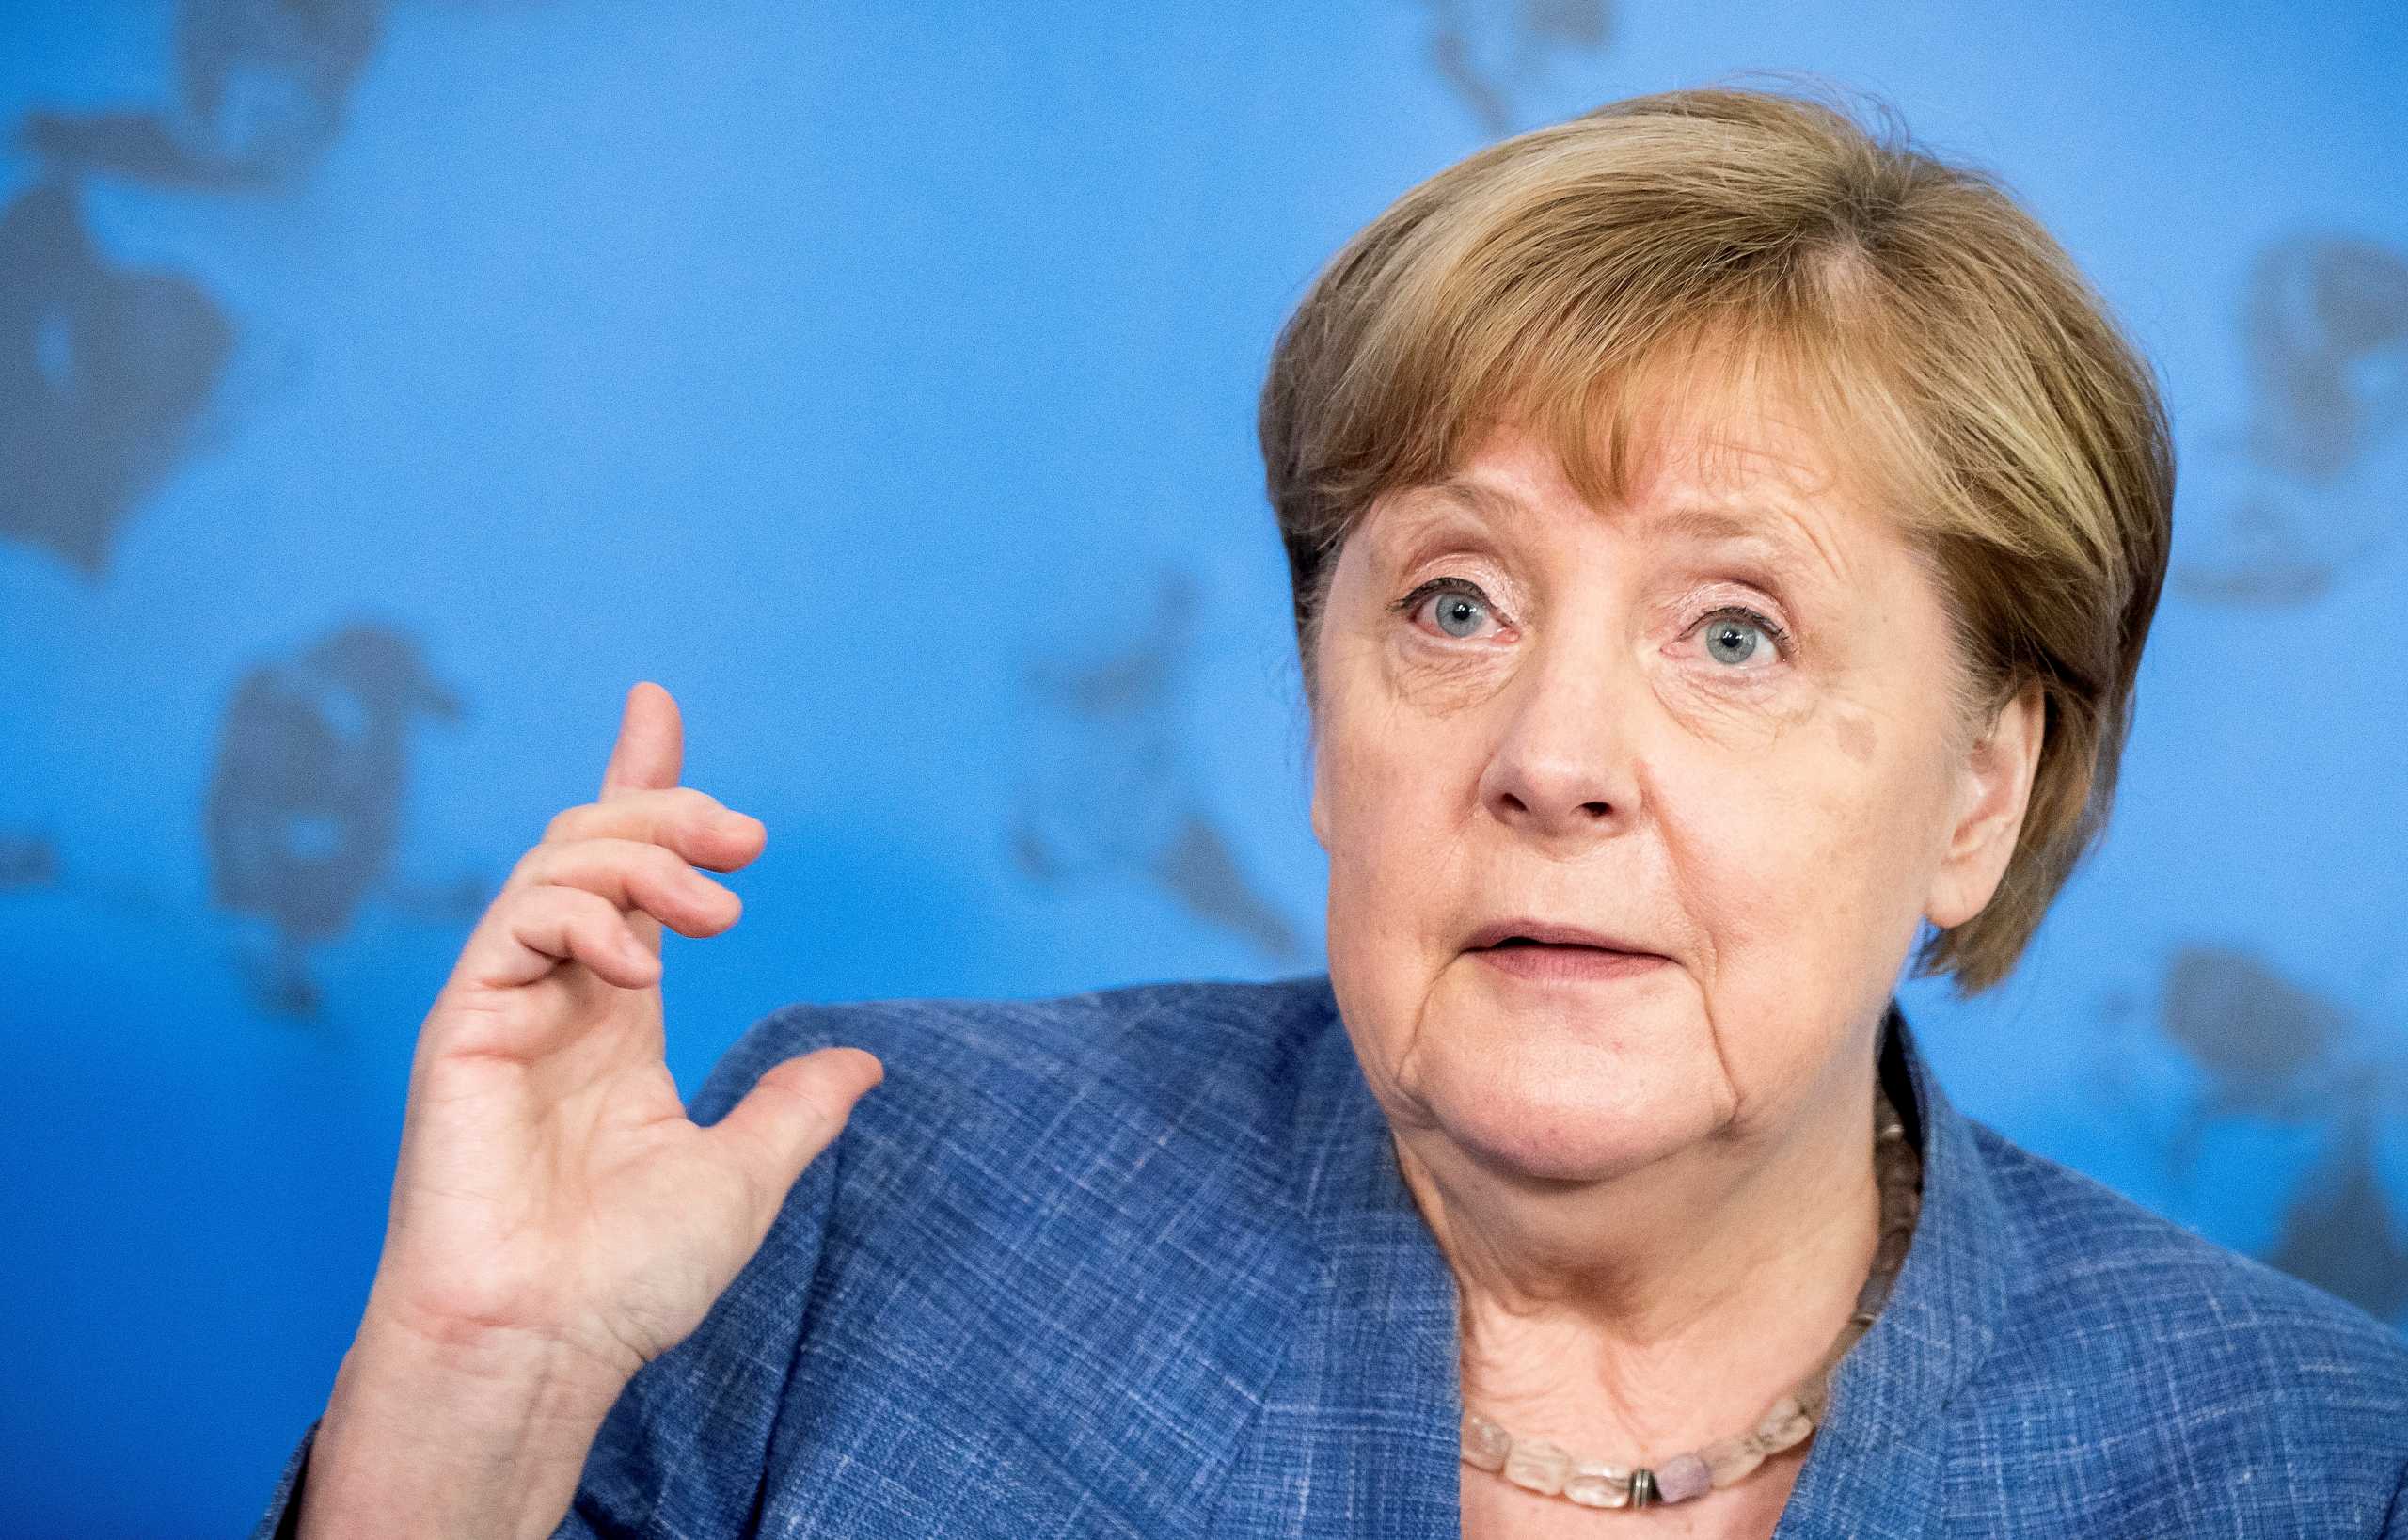 Εκλογές στη Γερμανία: Ύστατη έκκληση της Ανγκελα Μέρκελ σε CDU και CSU για τη νίκη